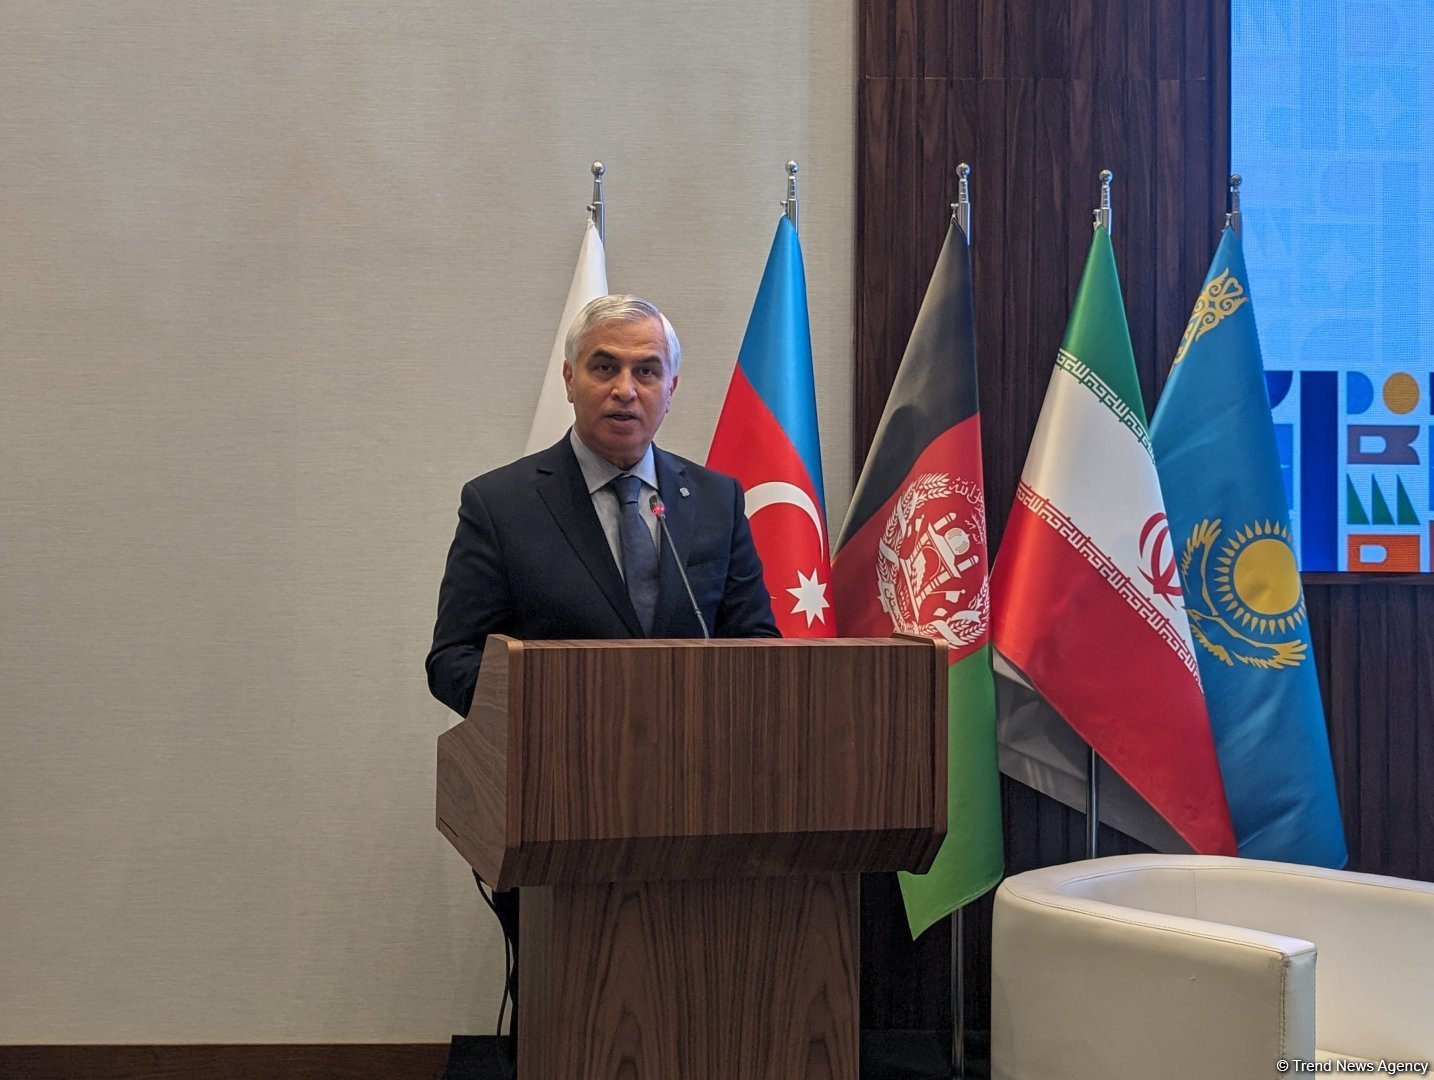 ОЭС высоко ценит приверженность Азербайджана к продвижению целей организации в области туризма - генсек